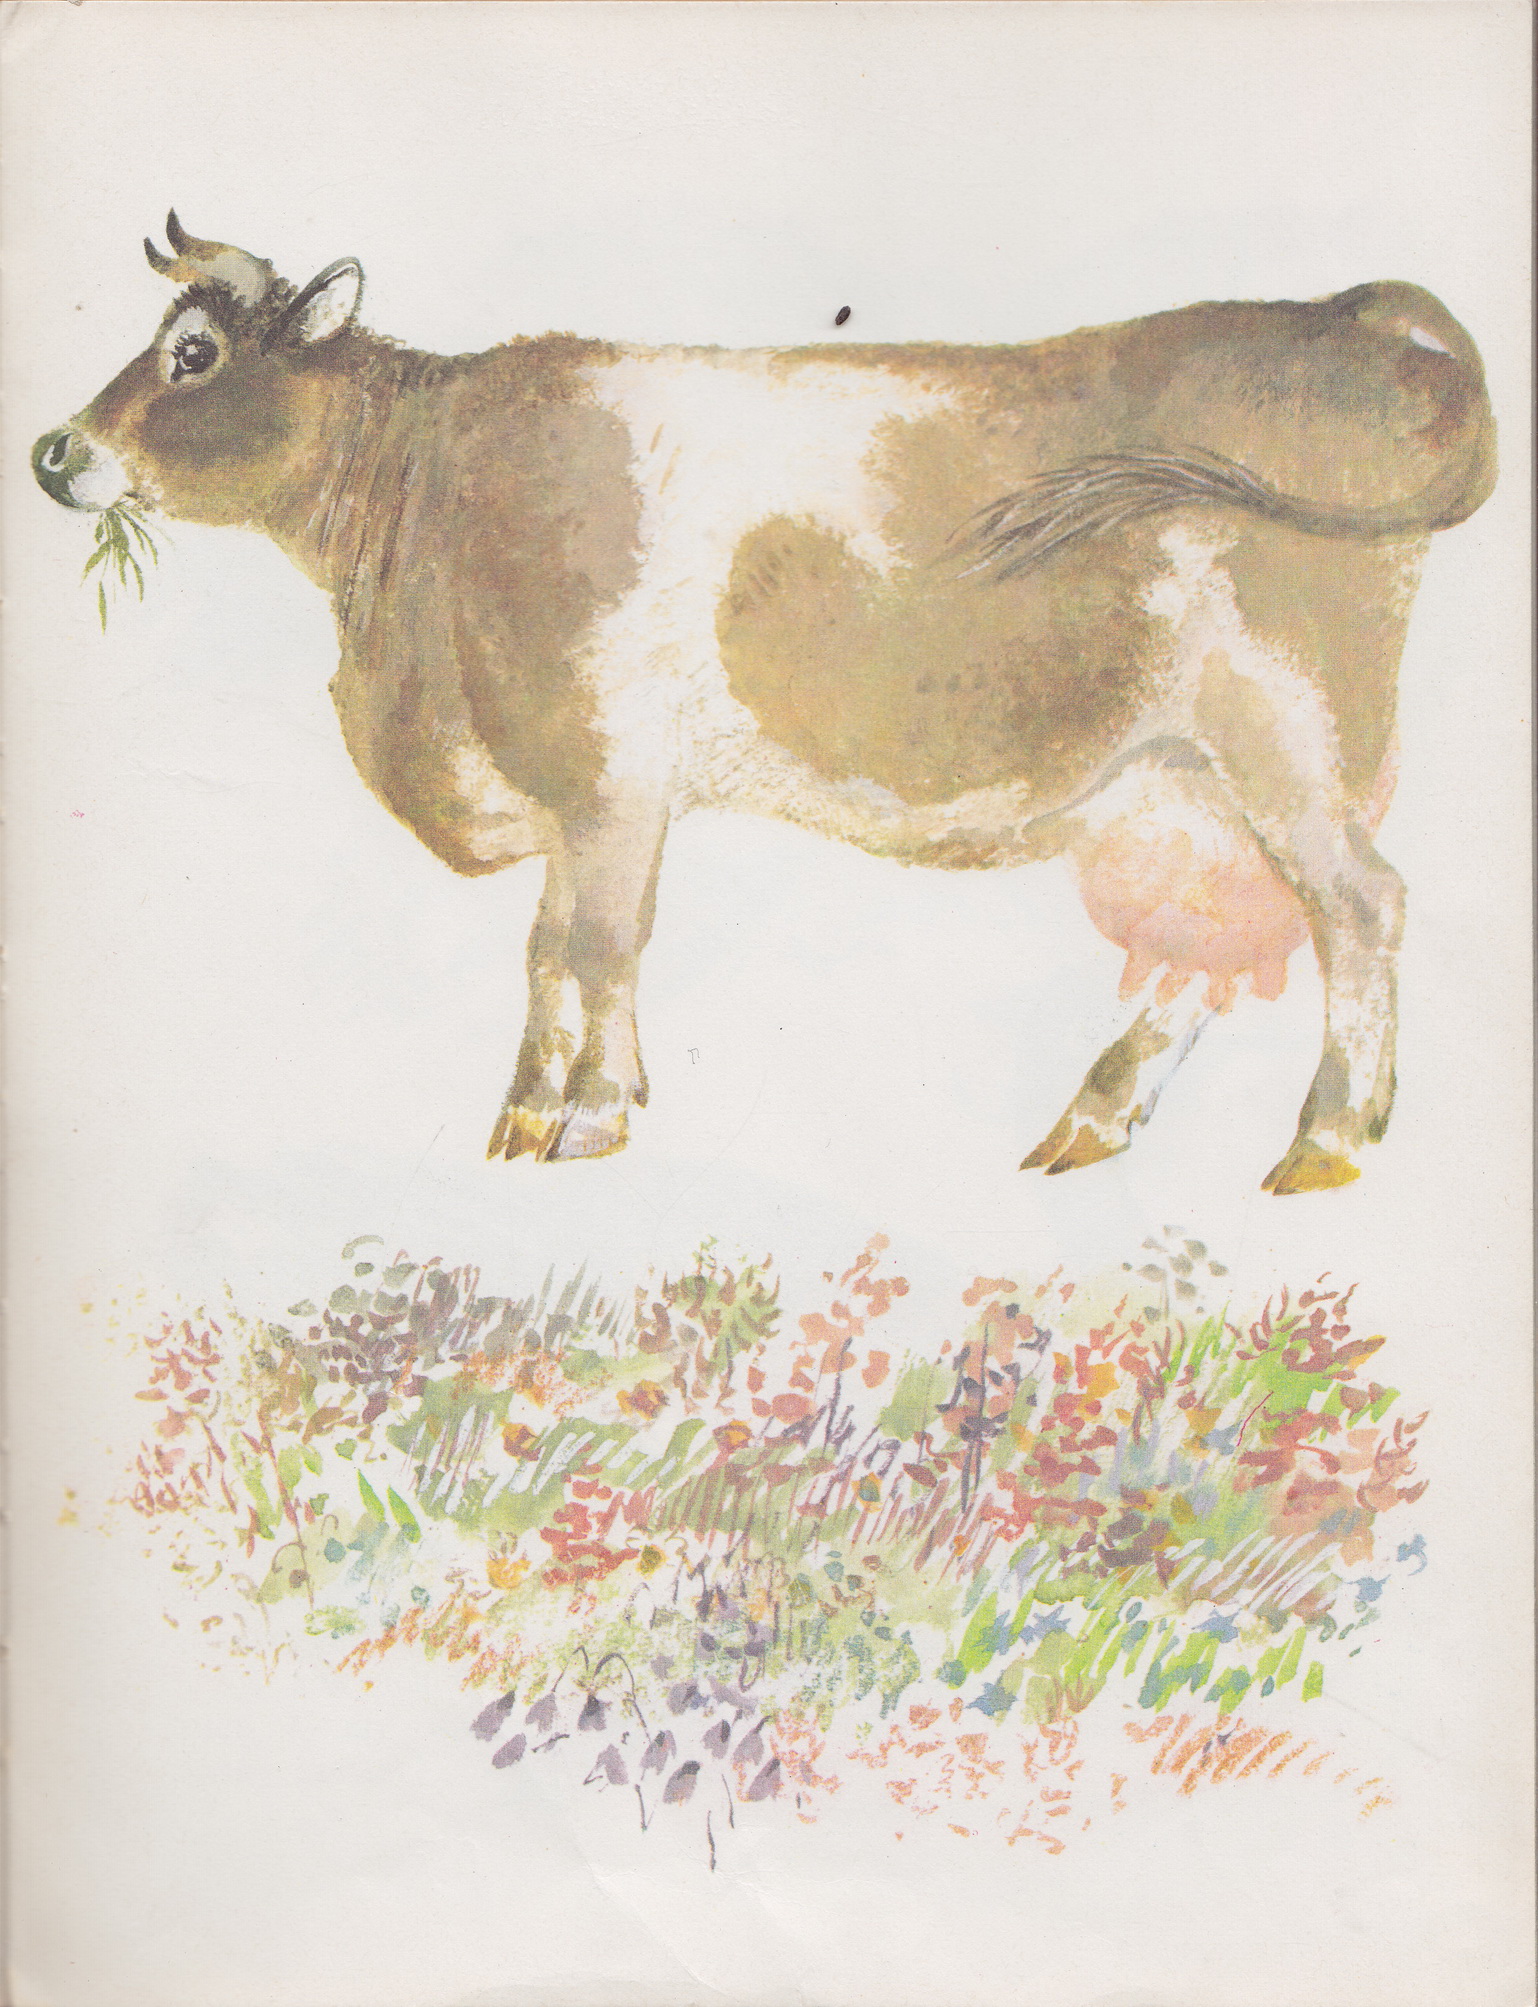 Нажмите для увеличения. Чарушин, Е. И. Моя первая зоология. Фото книги из фонда библиотеки 